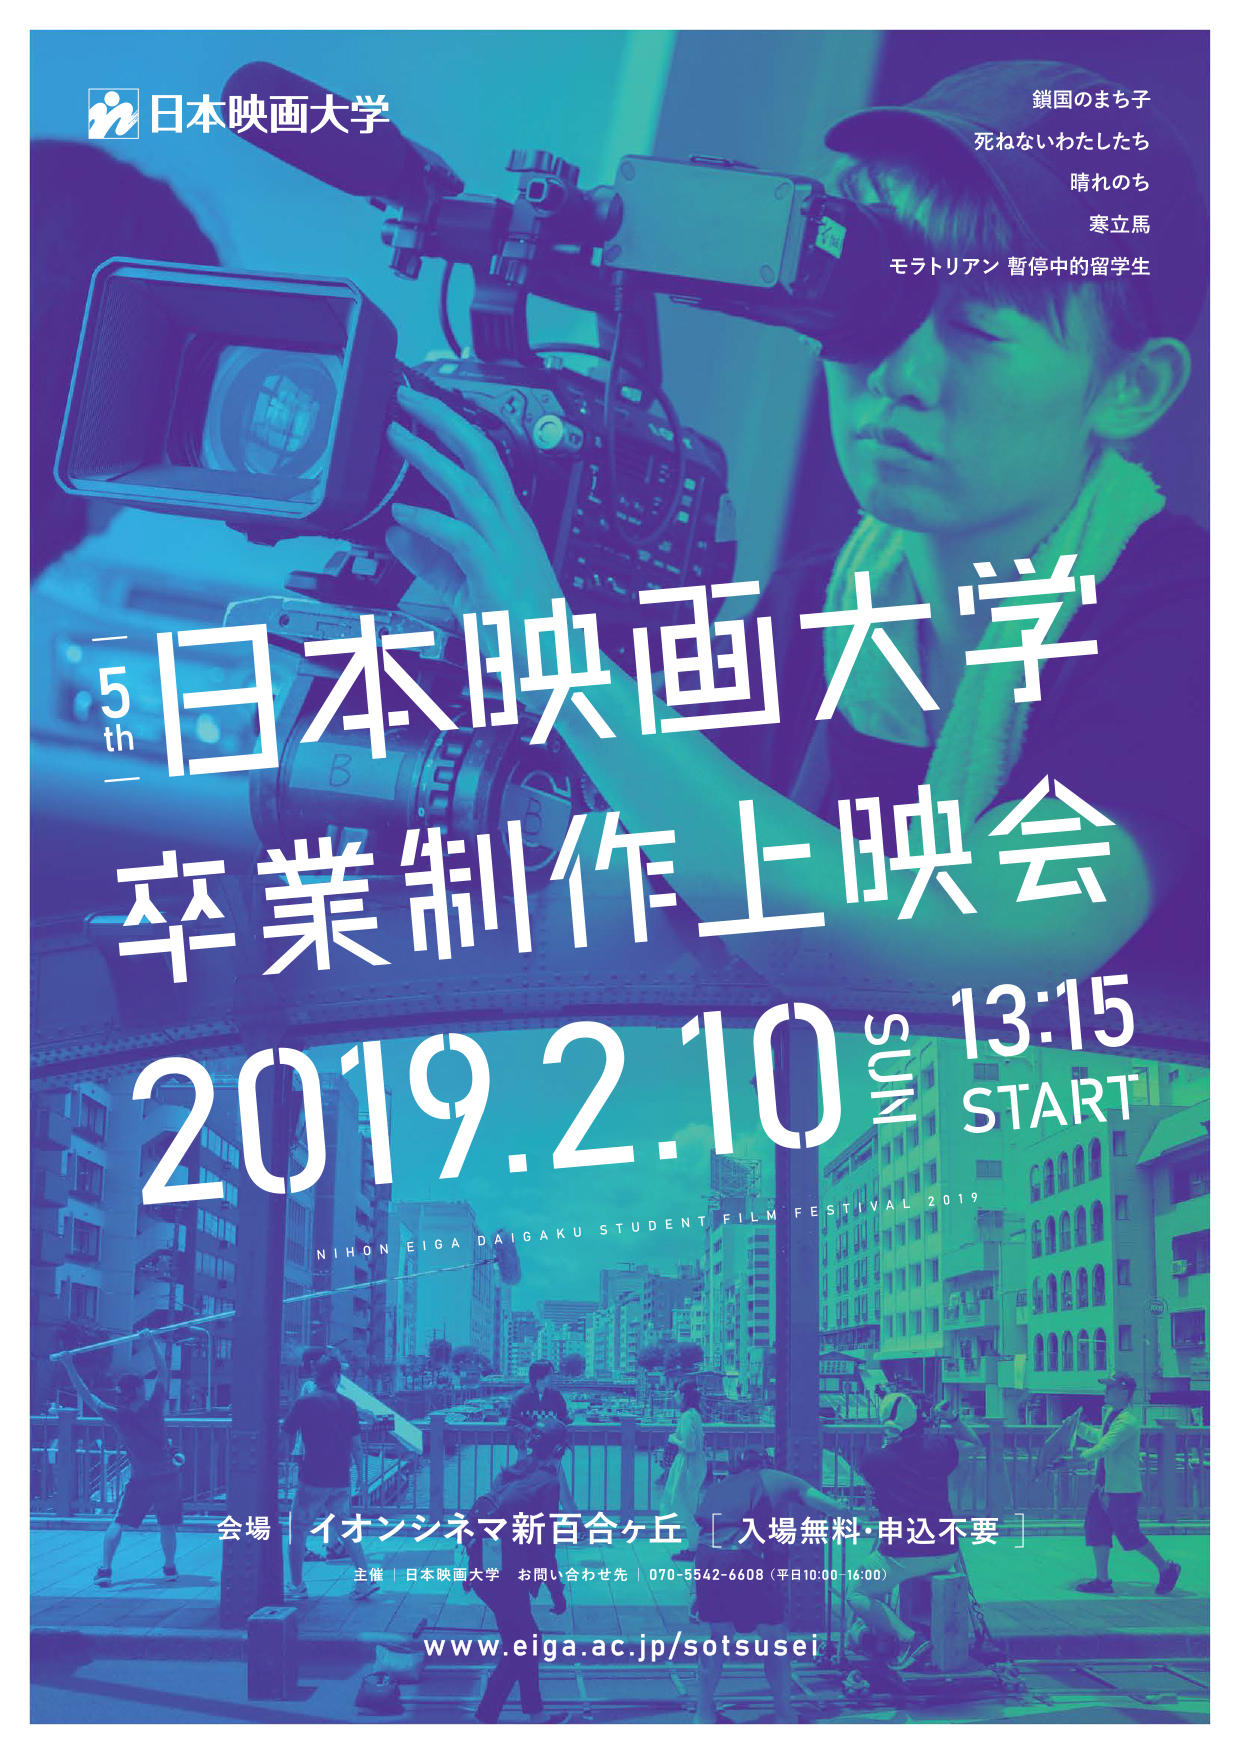 日本映画大学が2月10日にイオンシネマ新百合ヶ丘内最大座席数のスクリーンで卒業制作映画を一般公開 19年1月10日 エキサイトニュース